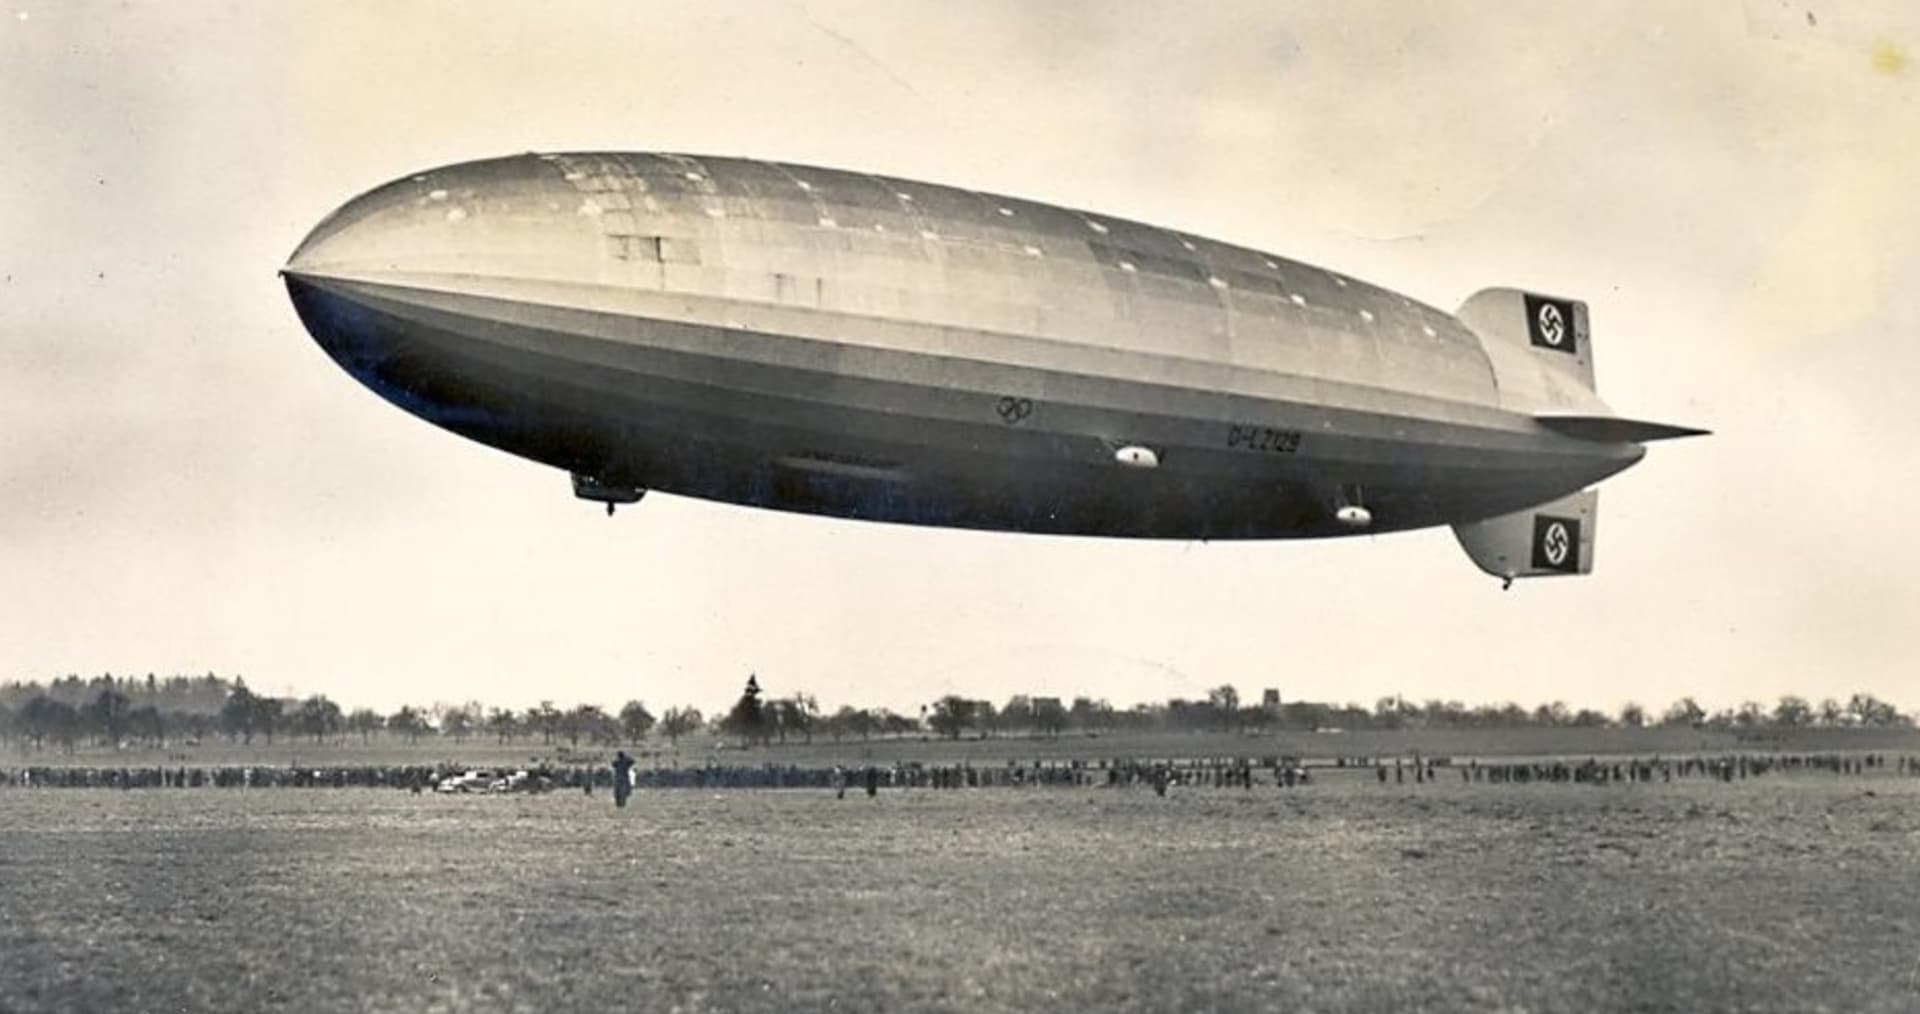 Vzducholoď Zeppelin na pohldnici z roku 1936